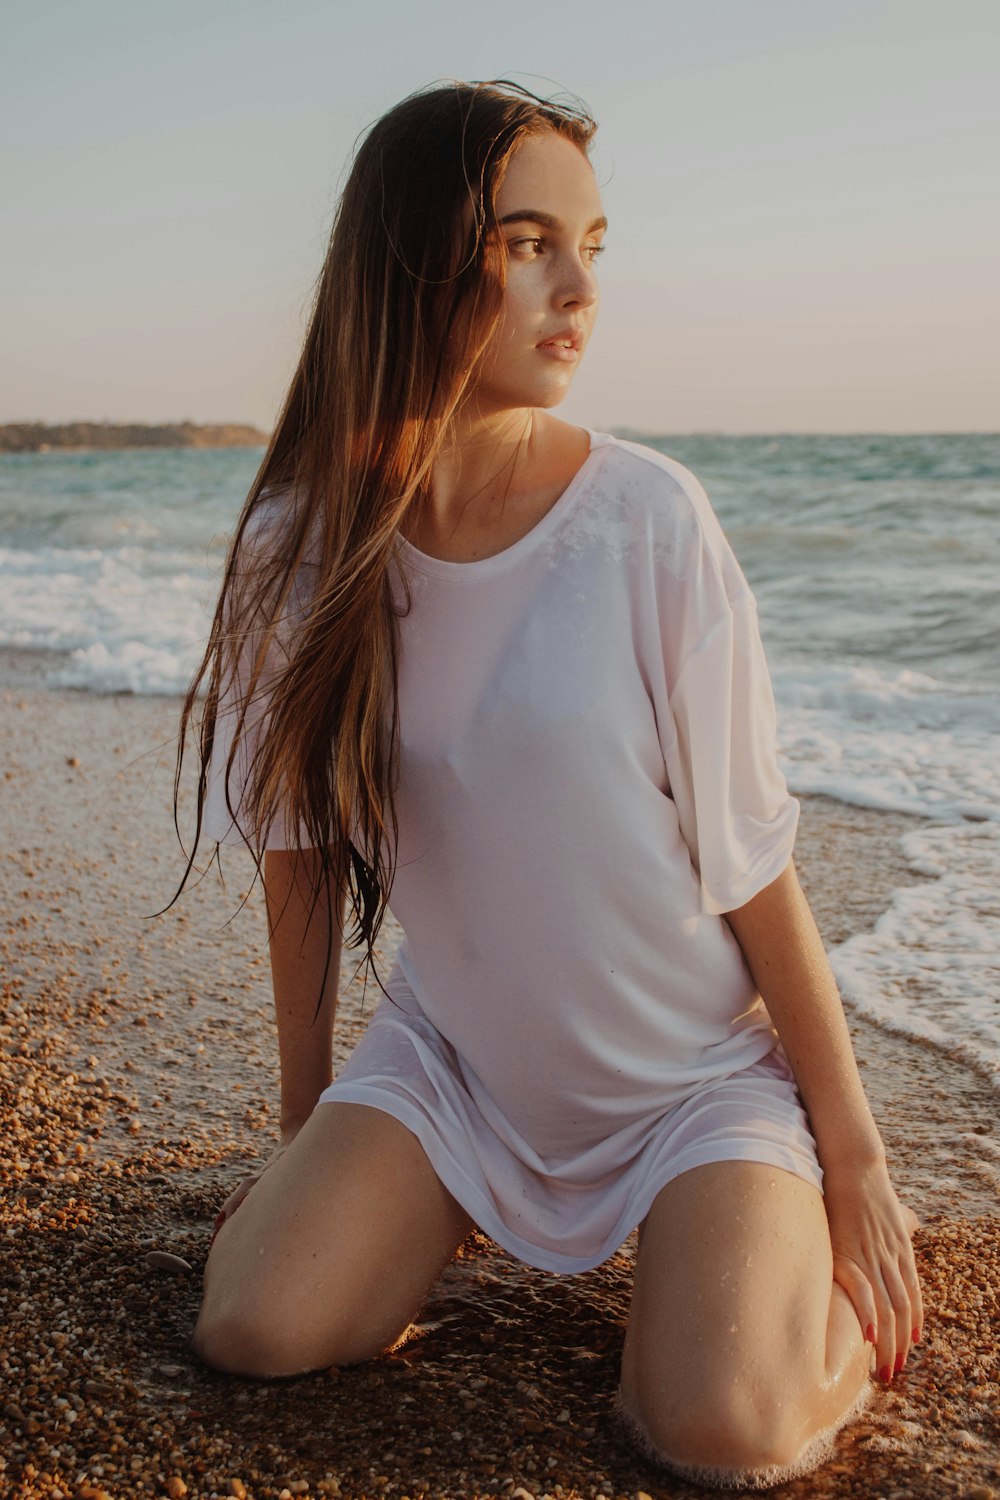 woman wearing white shirt kneeling on seashore during daytime